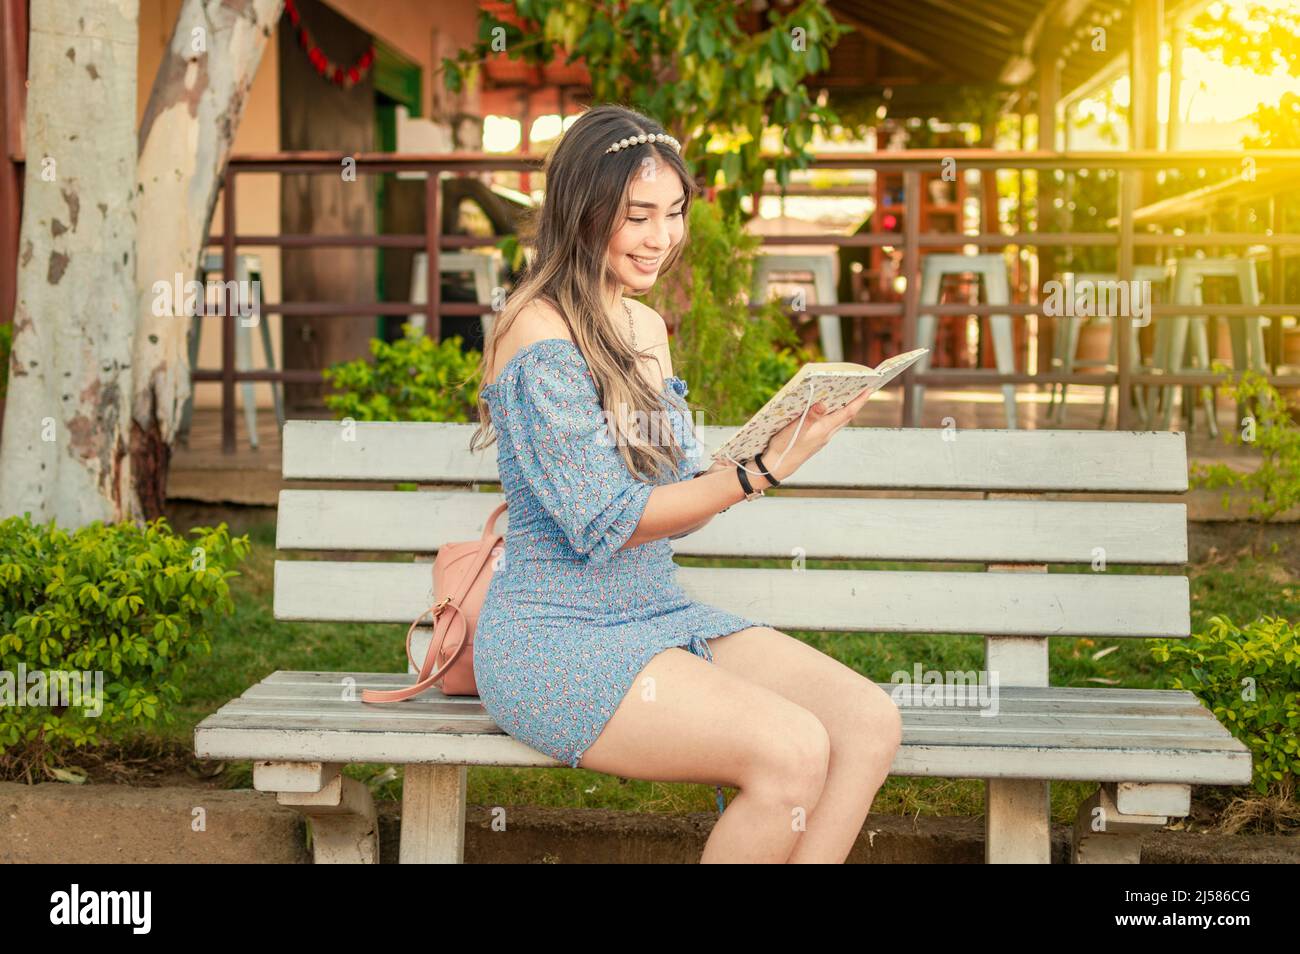 Ein süßes Mädchen, das auf einer Bank sitzt und ein Buch liest, ein hübsches junges lateinisches Mädchen, das ein Buch auf einer Bank liest Stockfoto